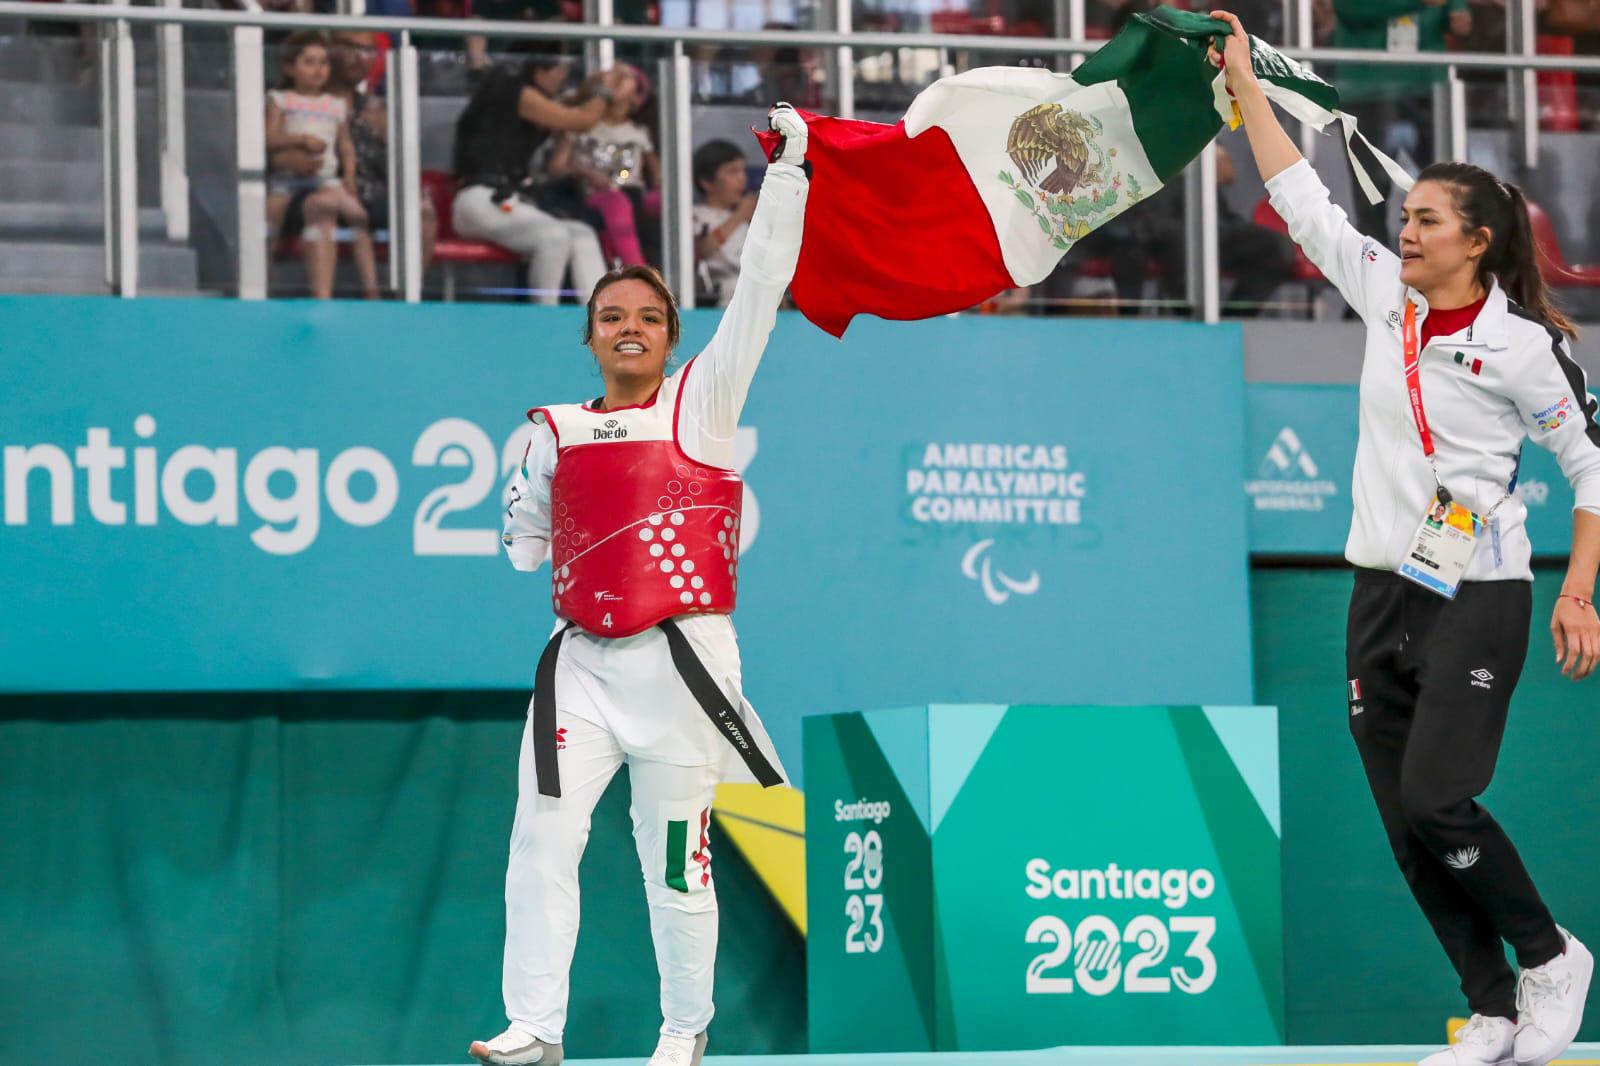 $!Con 29 oros, México cierra actuación en Juegos Parapanamericanos Santiago 2023